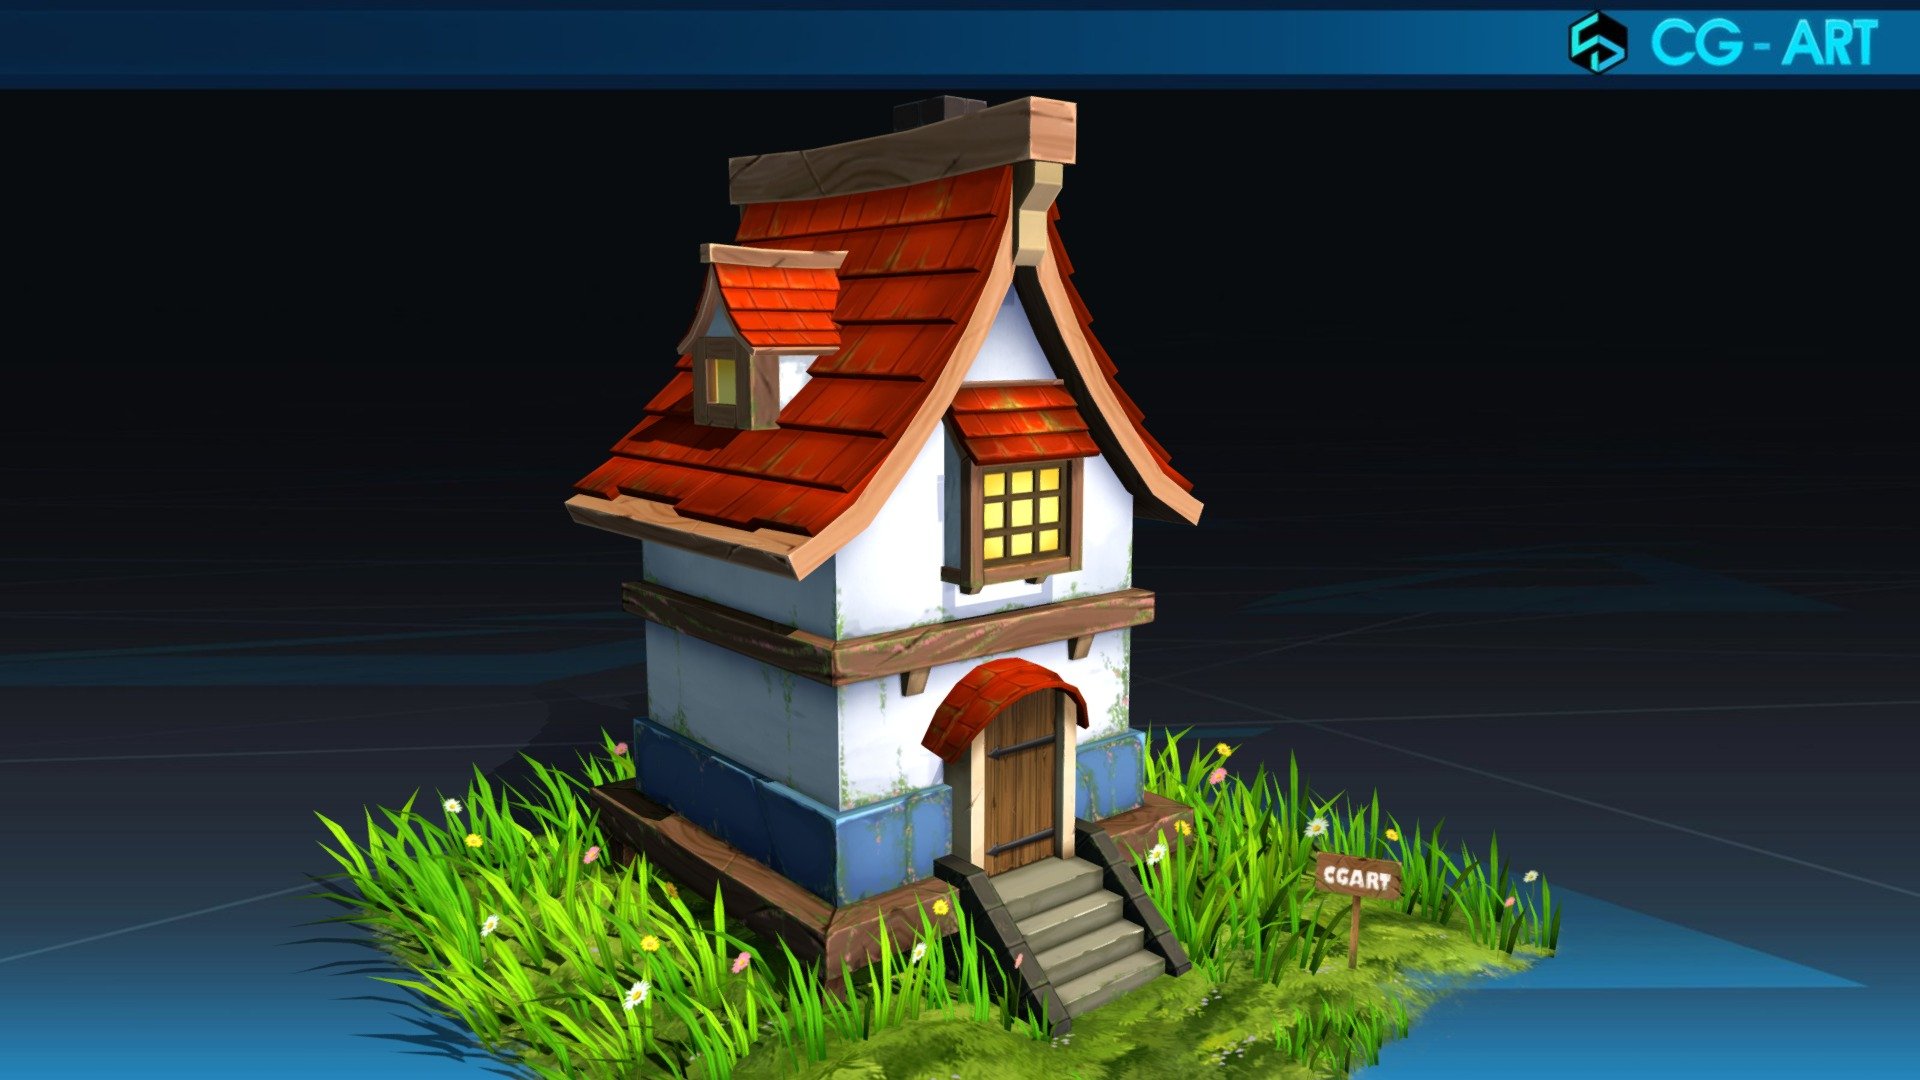 An little product from CGA Team.

https:cgart.vn - Little House - 3D model by cgart.com (@goart) 3d model